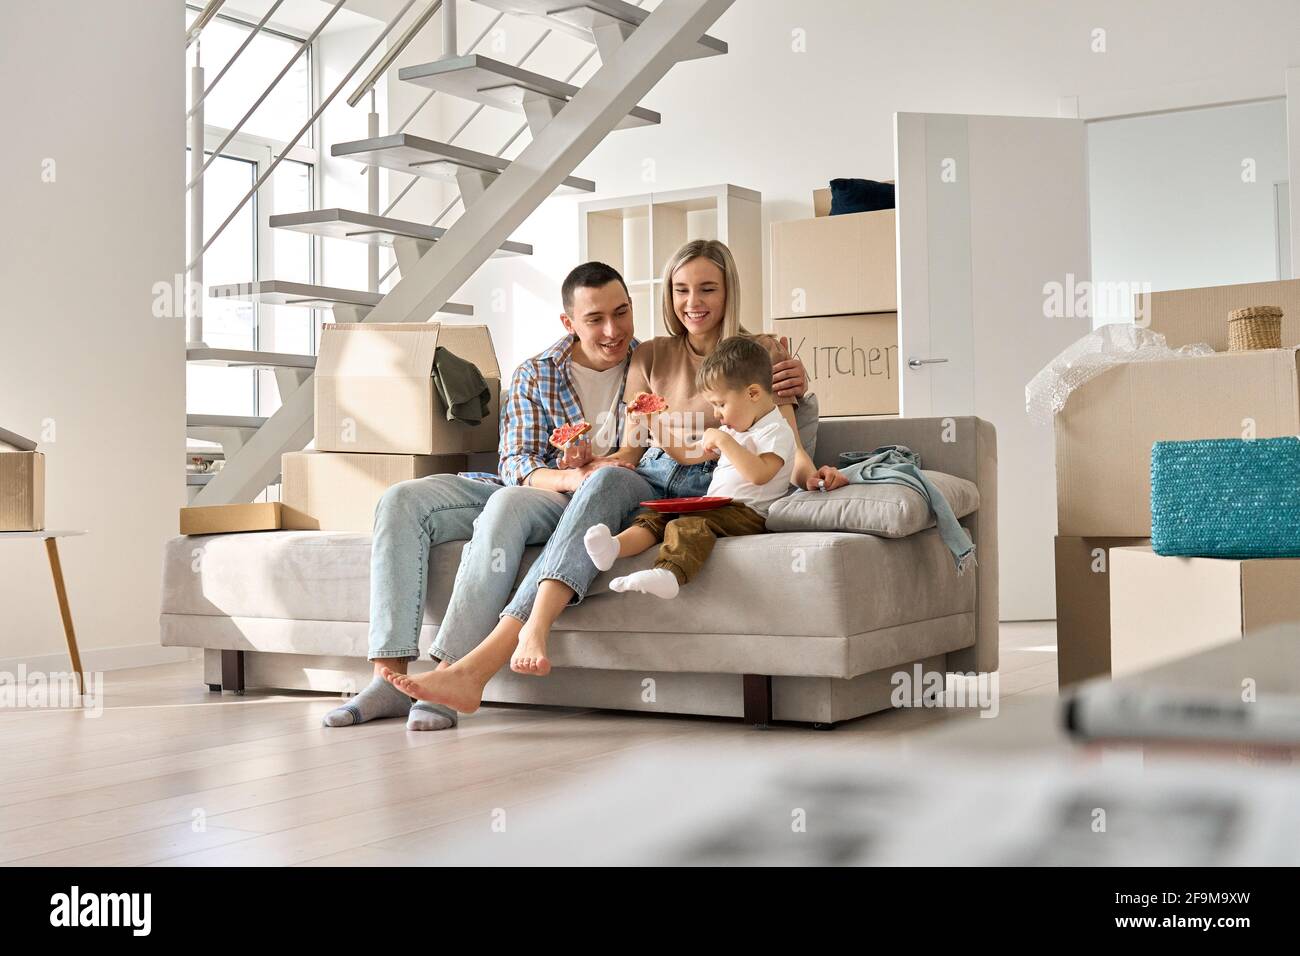 Un couple de familles heureux avec un fils enfant se détendant sur un canapé lors d'une journée de déménagement dans une nouvelle maison. Banque D'Images